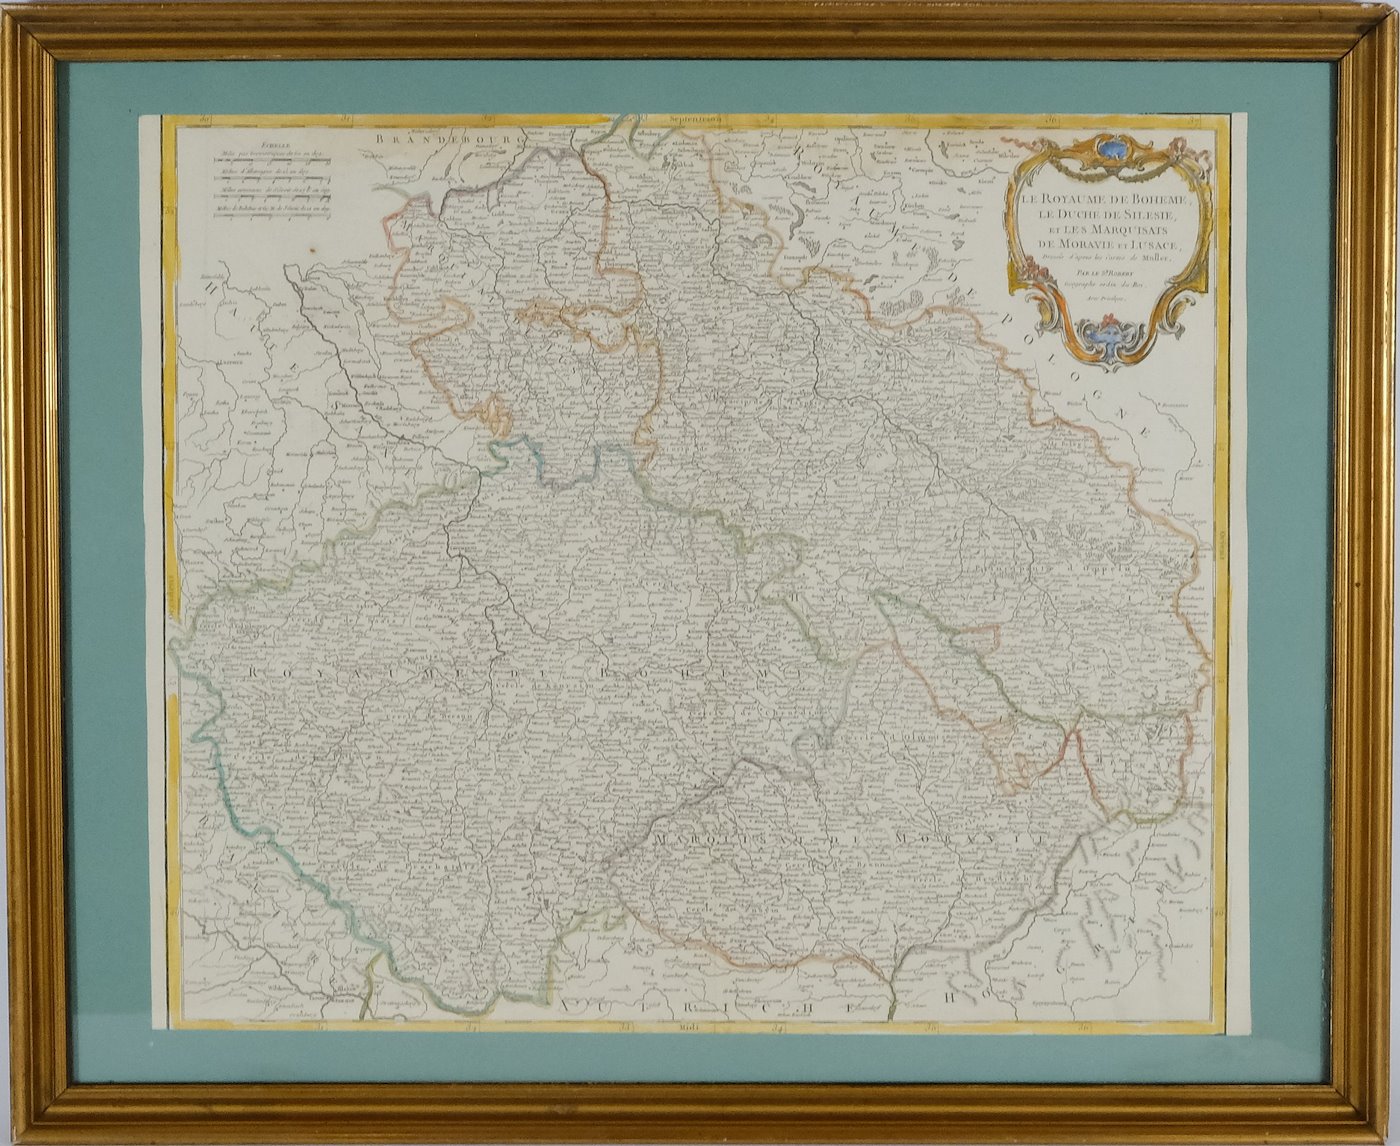 Robert de Vaugondy - Mapa - Země království českého